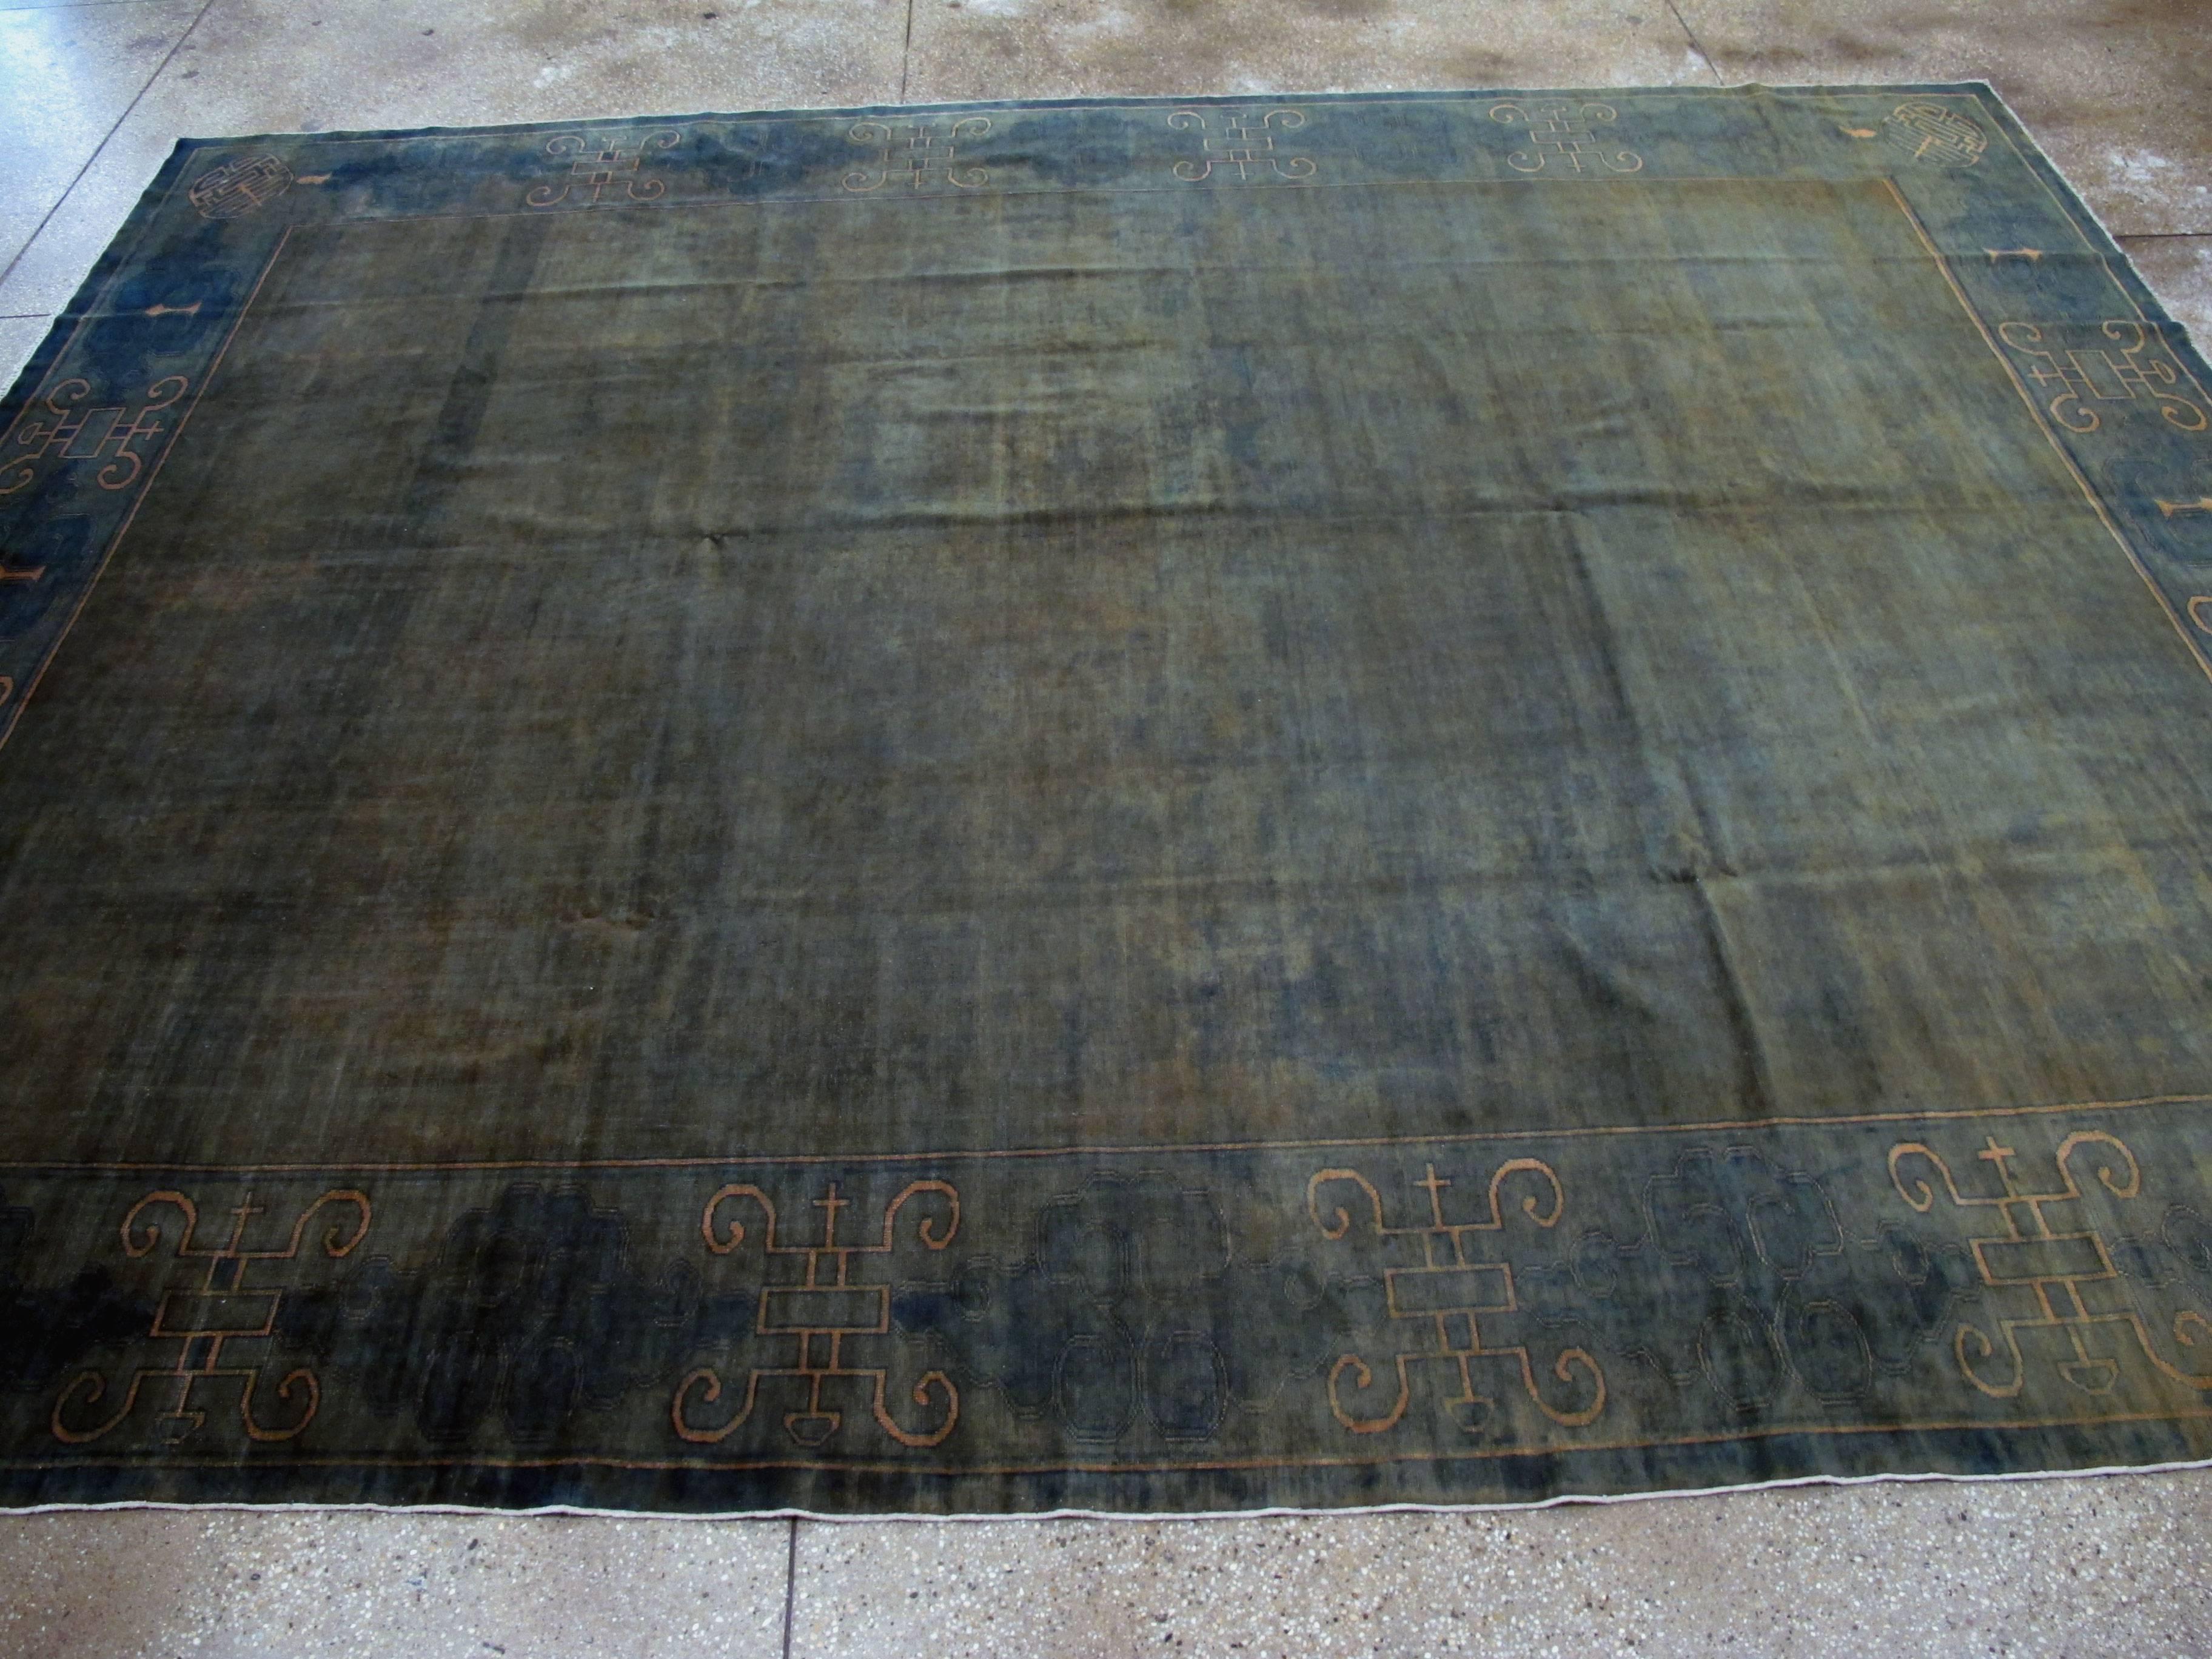 Antique Chinese Peking Carpet 1